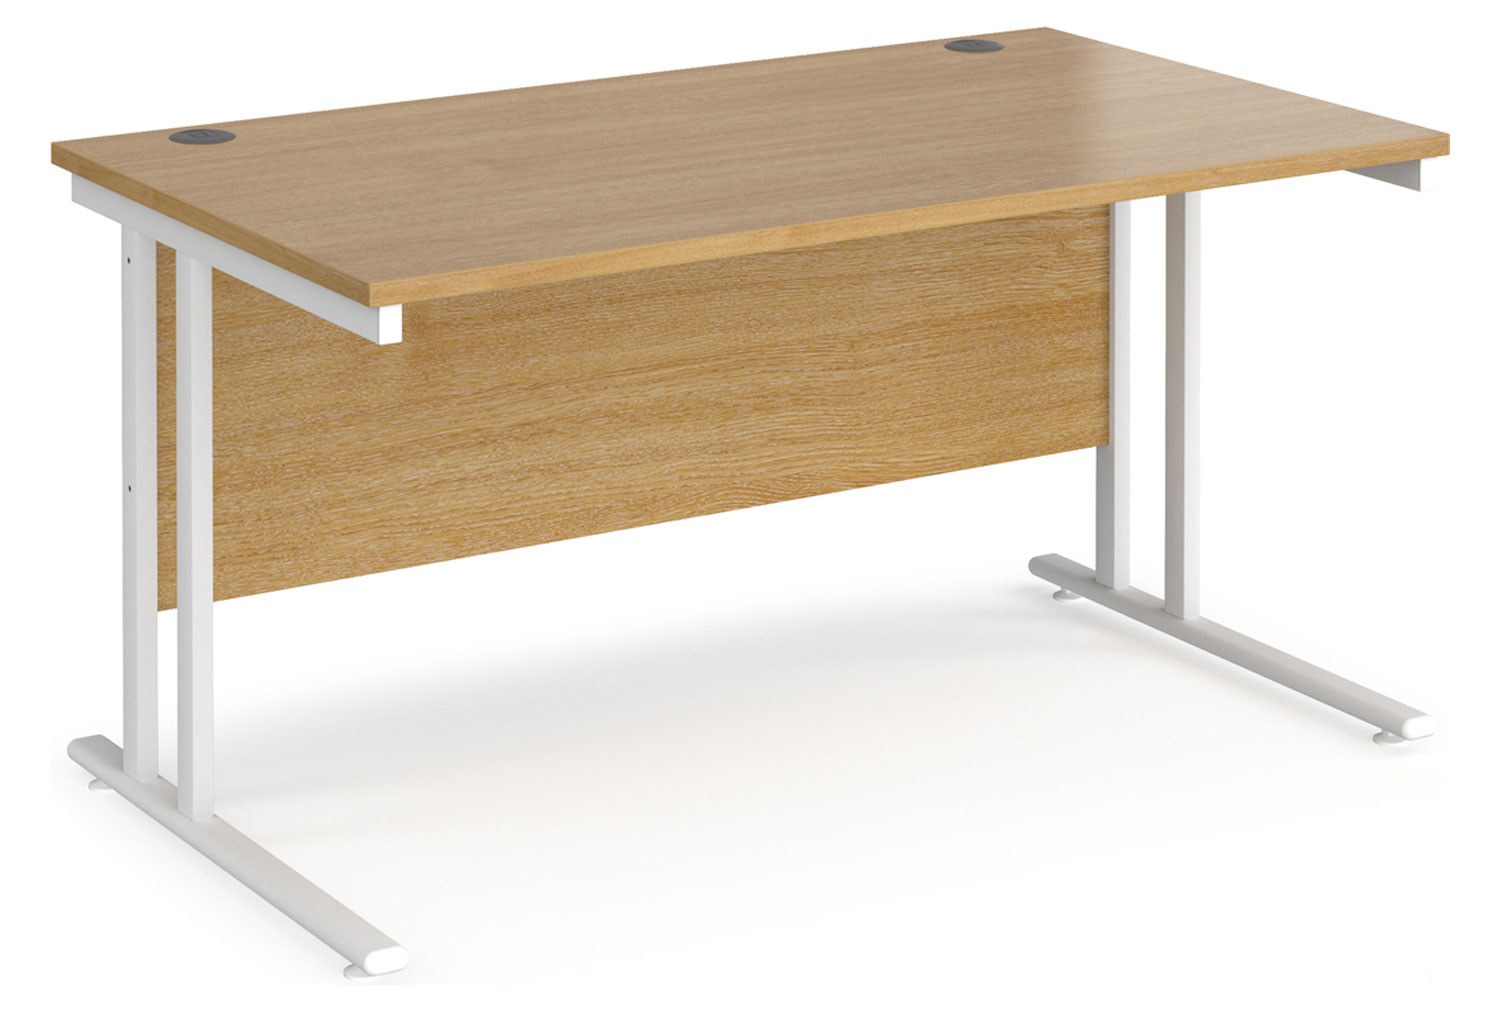 Value Line Deluxe C-Leg Rectangular Office Desk (White Legs), 140wx80dx73h (cm), Oak, Fully Installed